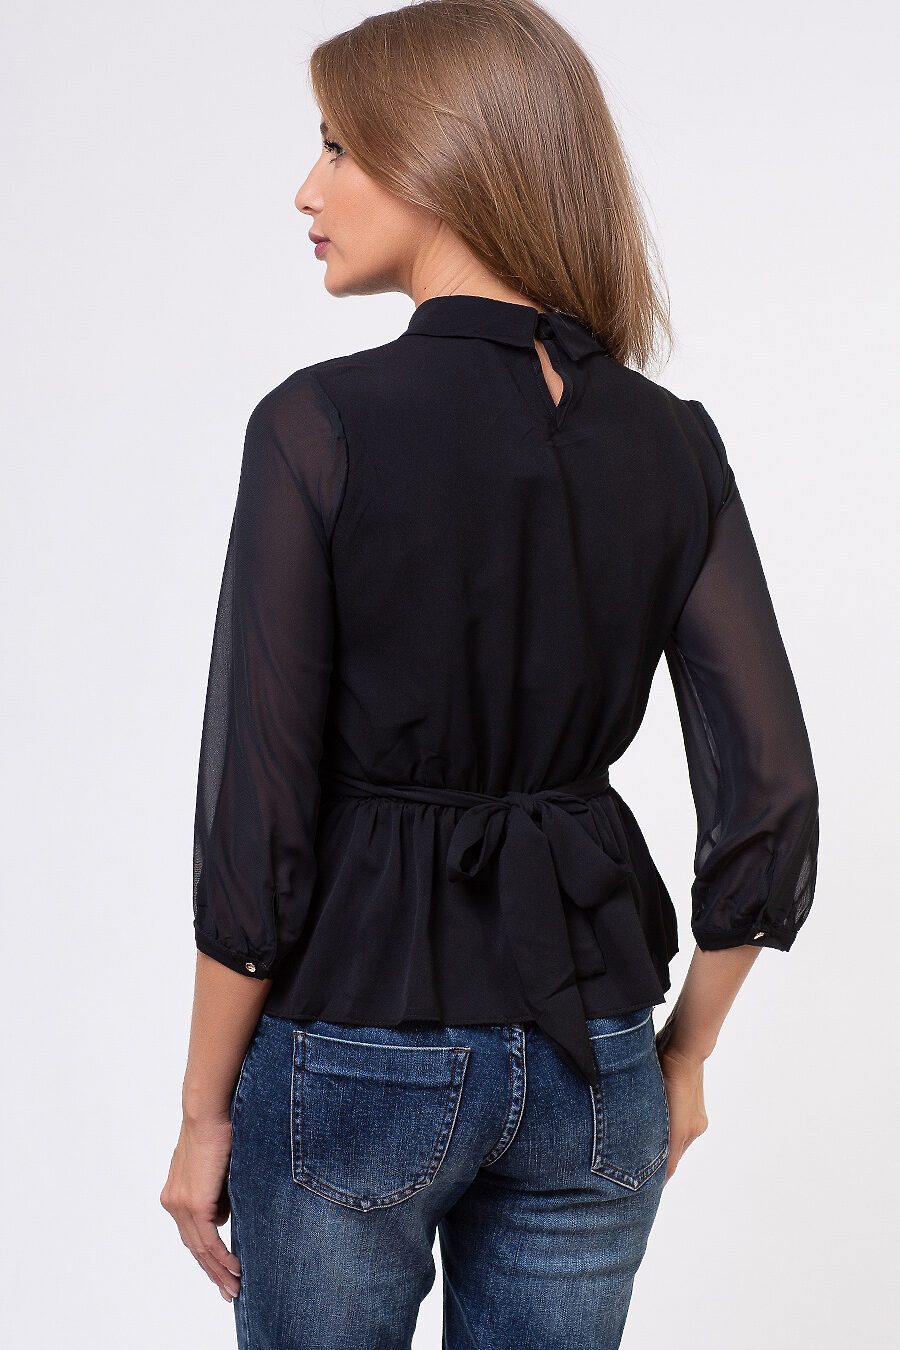 Блуза TUTACHI (127416), купить в Moyo.moda